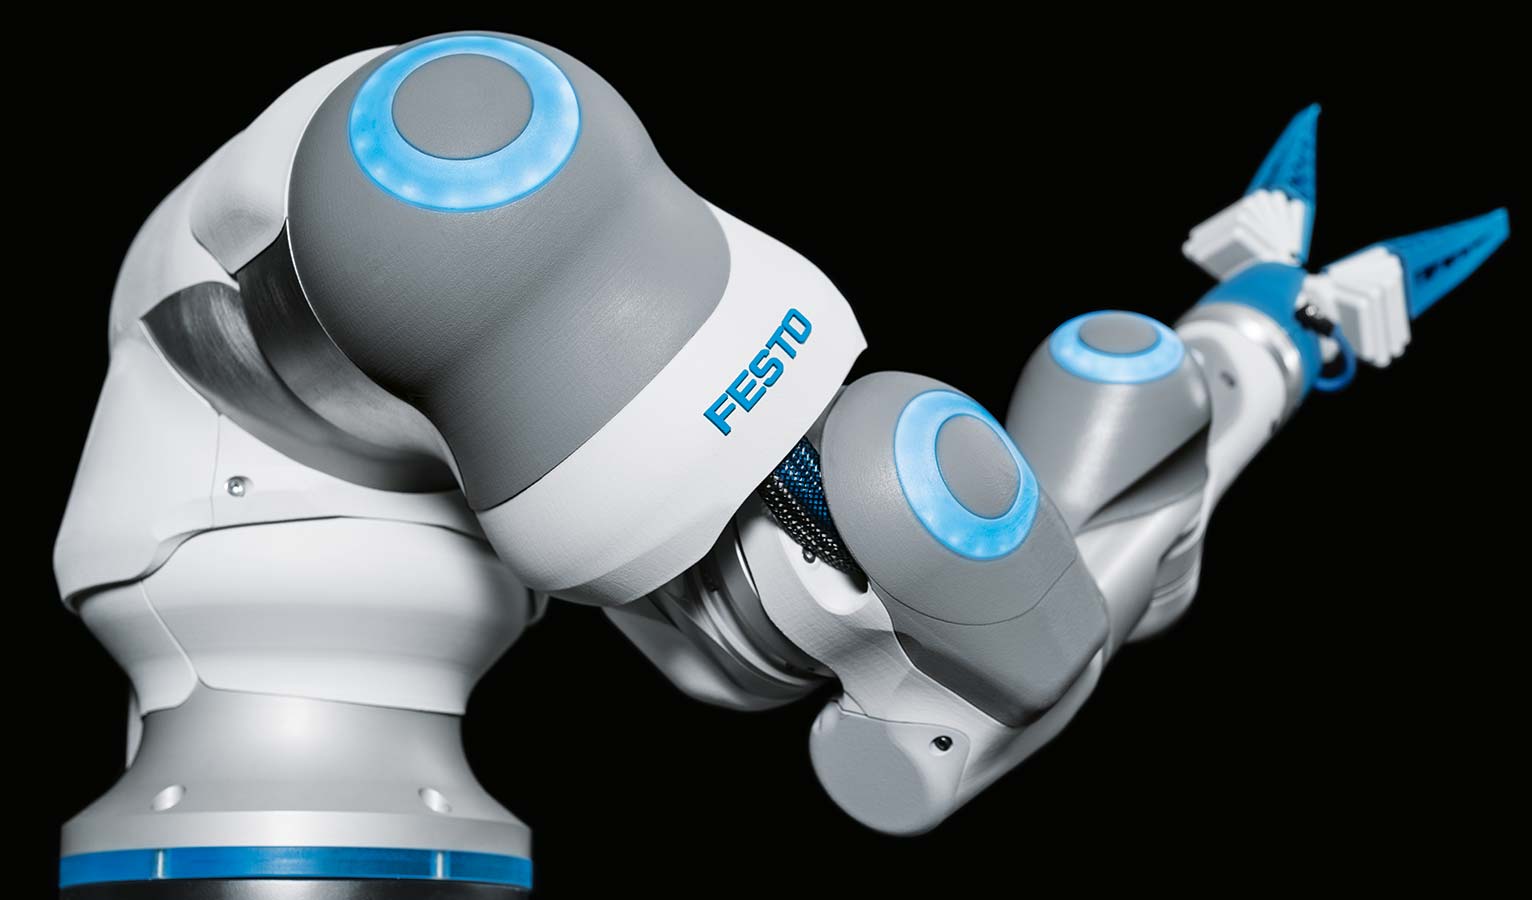 Festo Bionic Cobot, copyright by Festo